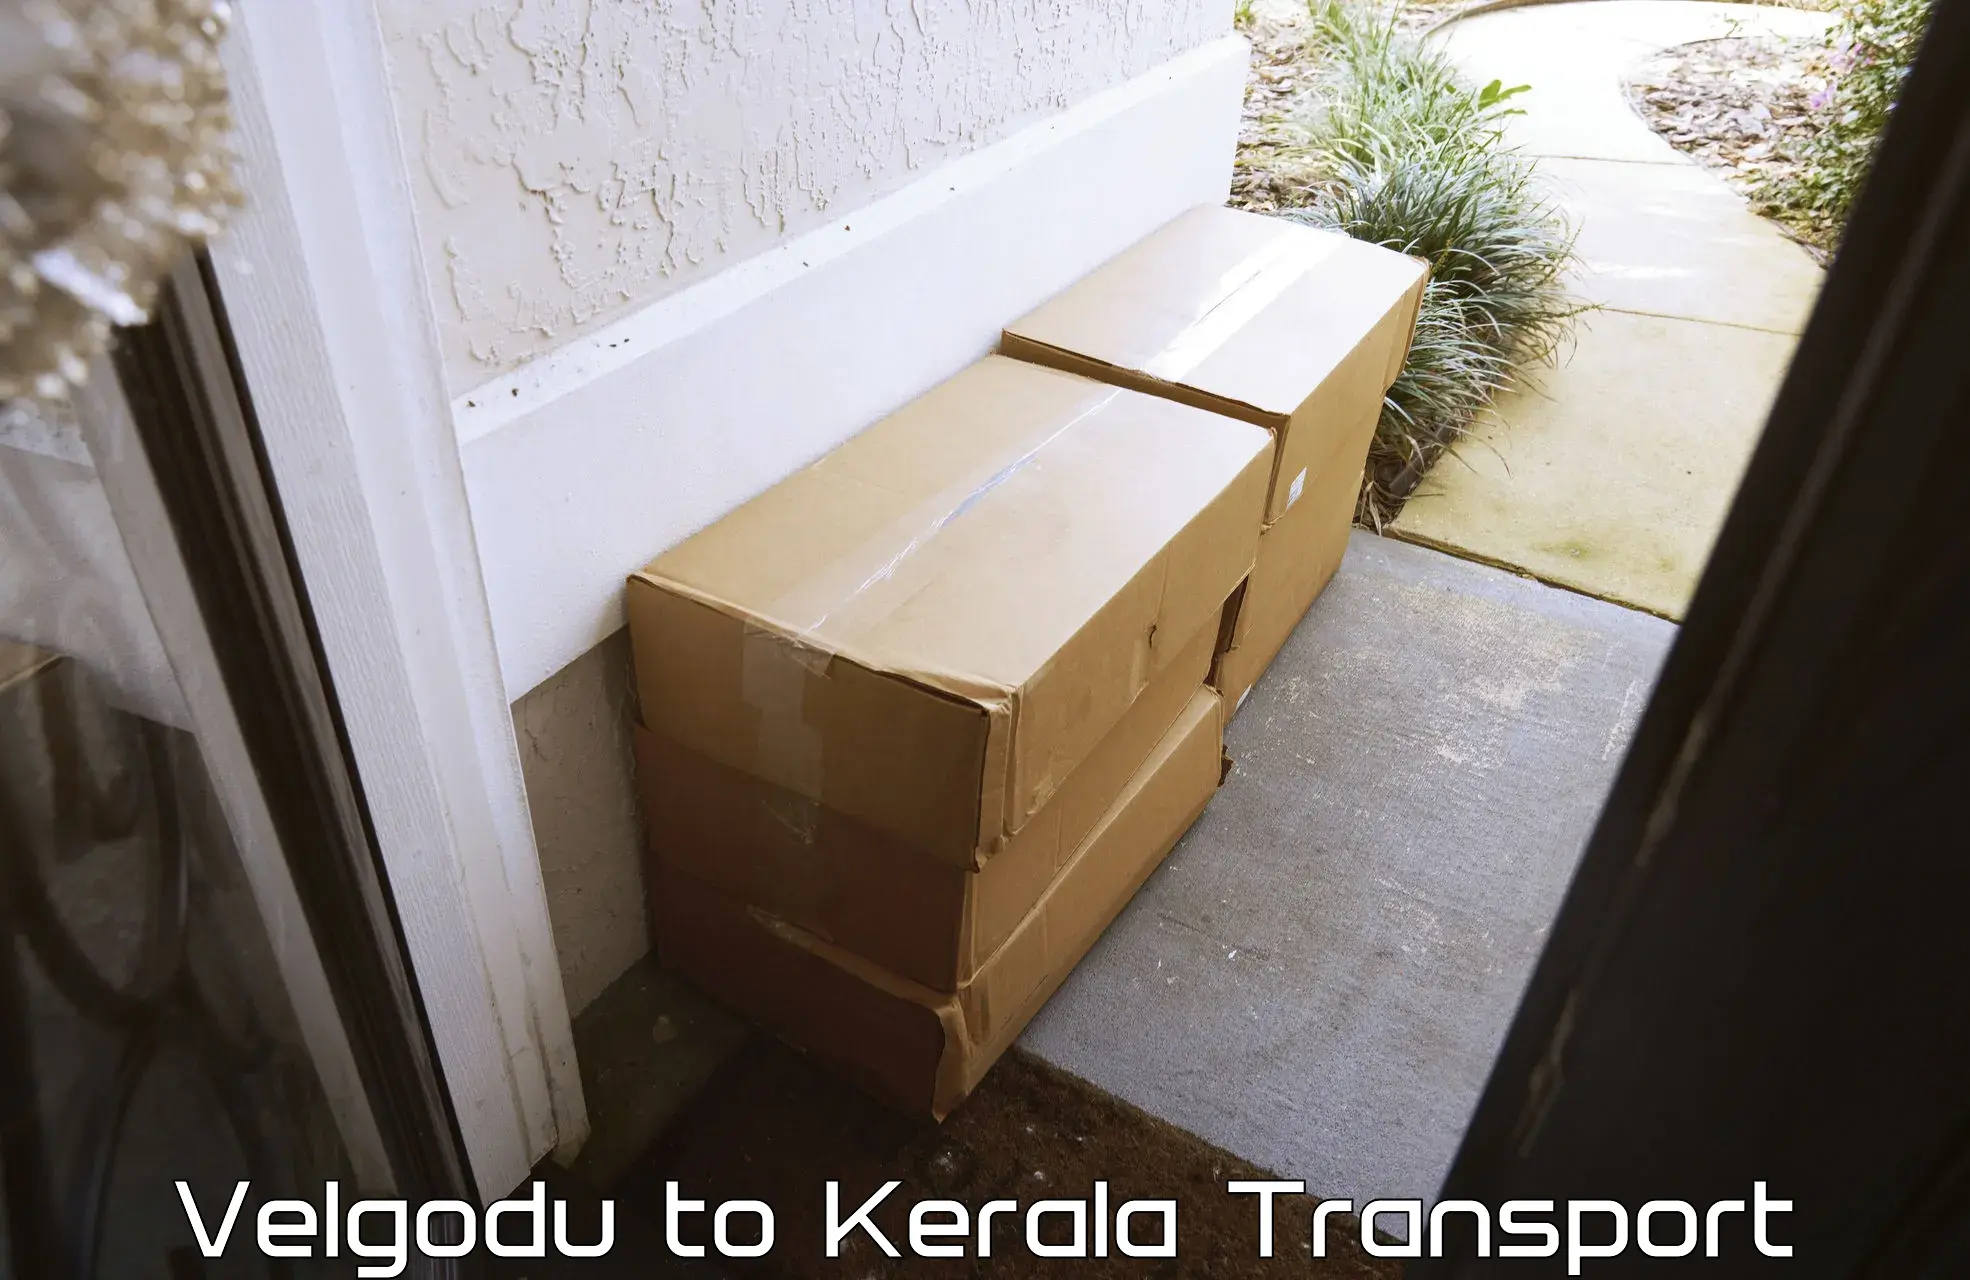 Cargo transport services Velgodu to Kazhakkoottam